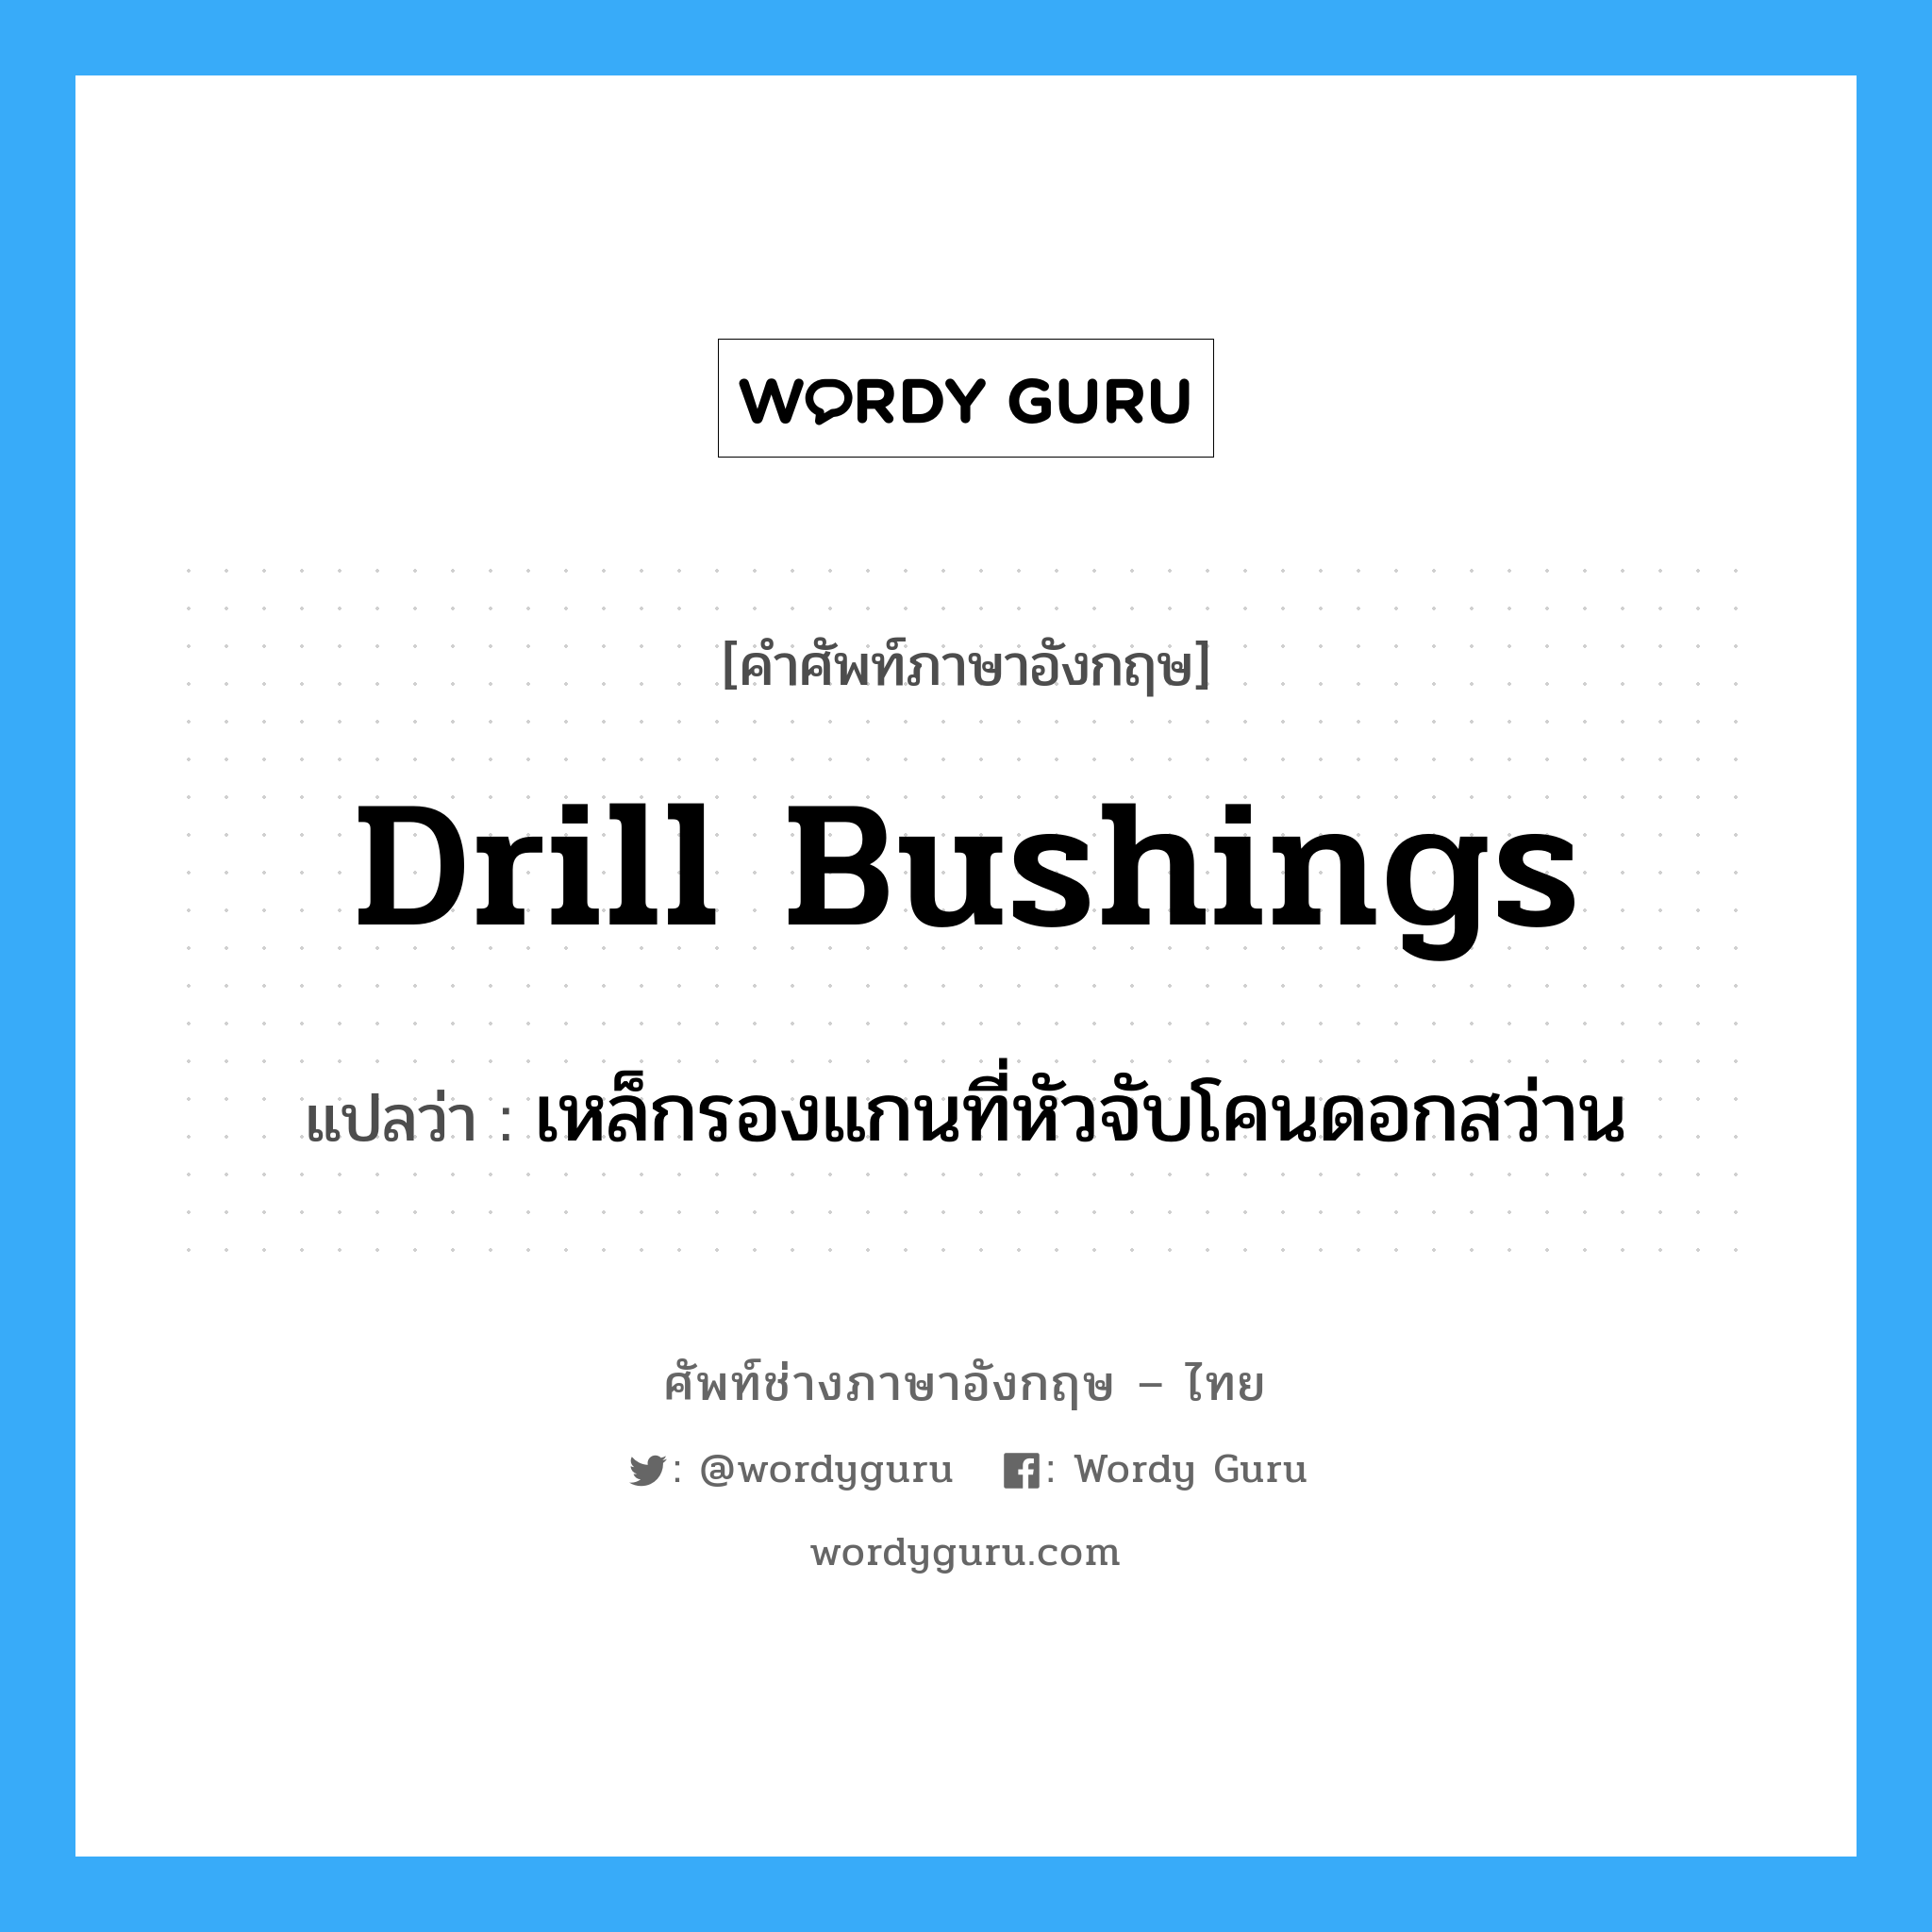 drill bushings แปลว่า?, คำศัพท์ช่างภาษาอังกฤษ - ไทย drill bushings คำศัพท์ภาษาอังกฤษ drill bushings แปลว่า เหล็กรองแกนที่หัวจับโคนดอกสว่าน